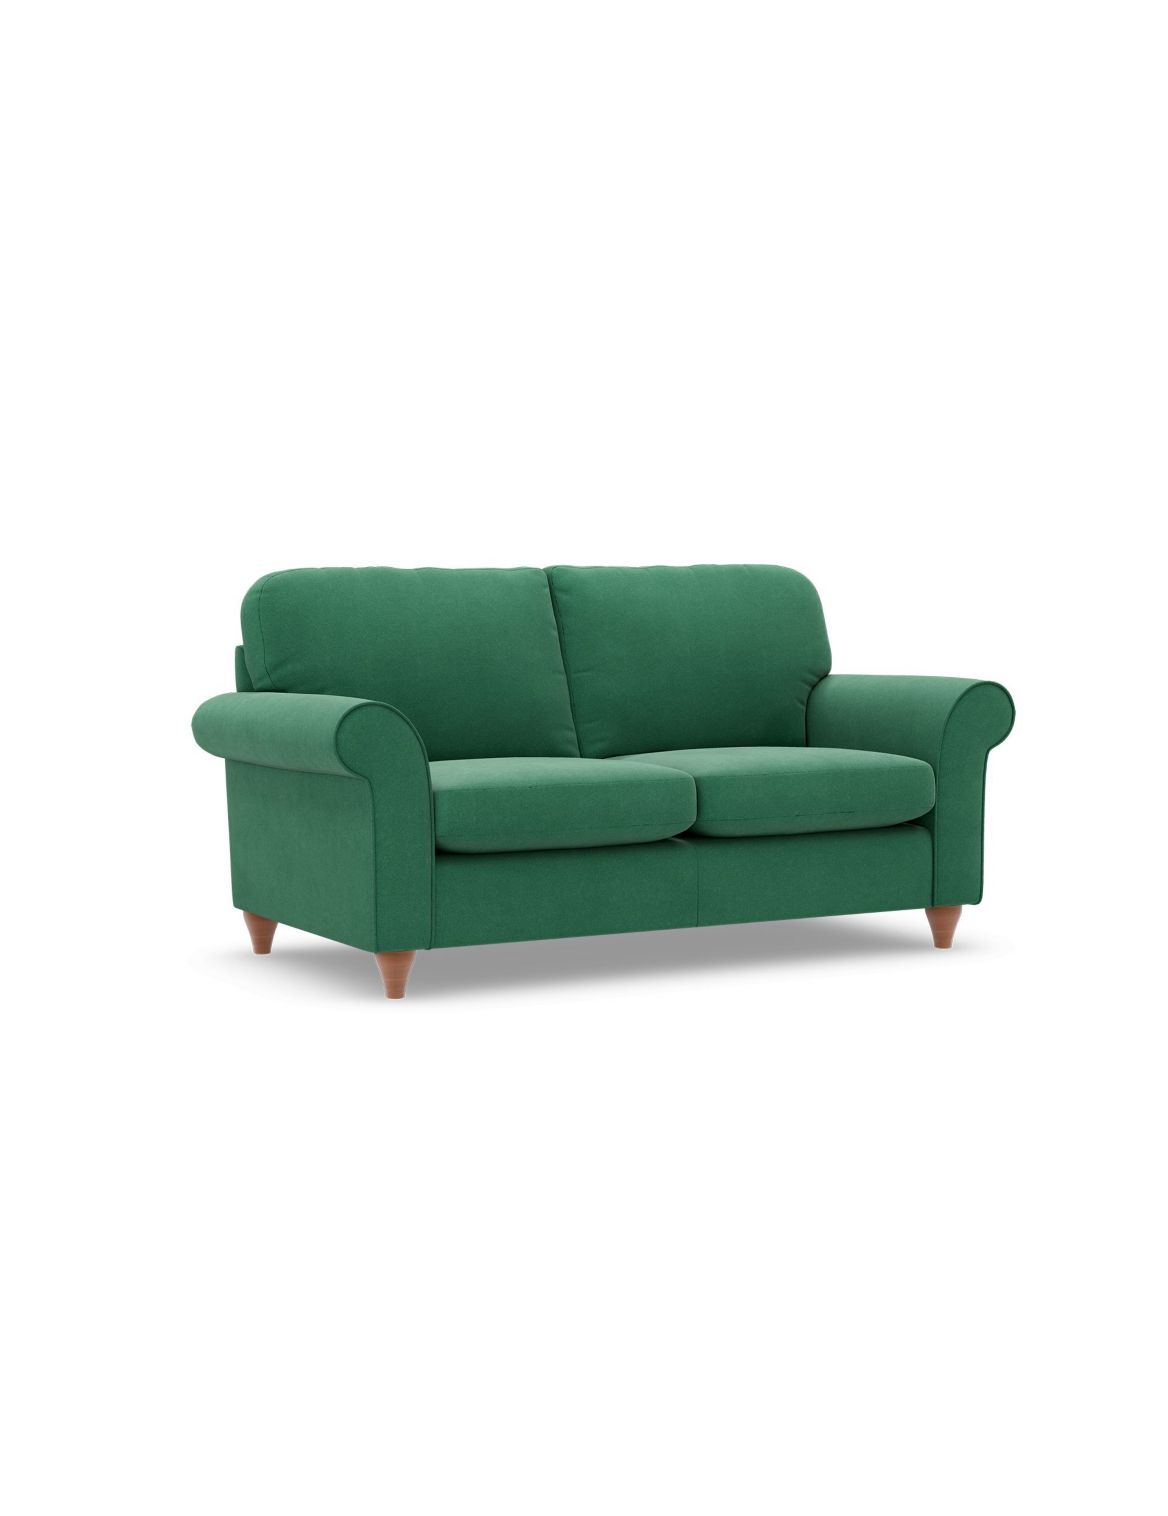 Olivia Small Sofa green